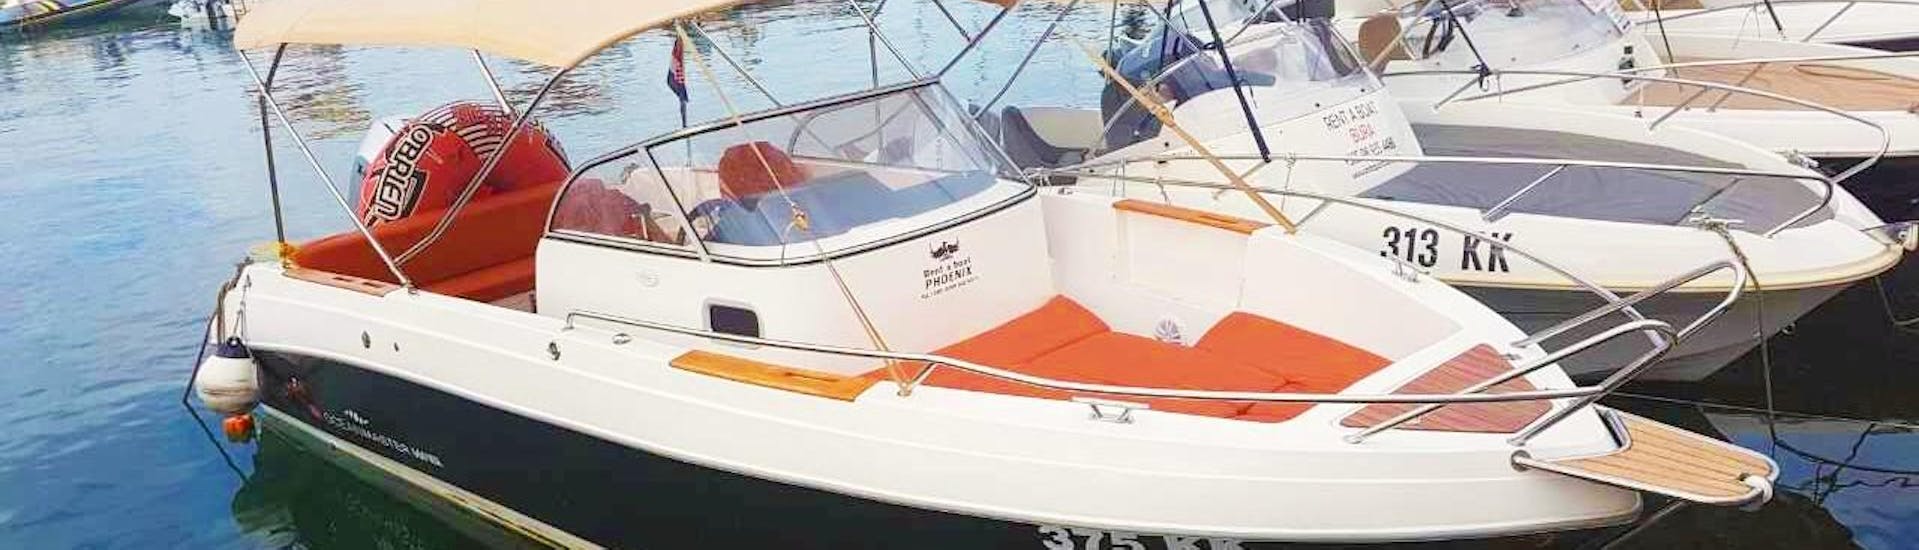 Boot beschikbaar voor een verhuur van een motorboot voor 8 personen in Krk met onze partner Rent a Boat Phoenix.